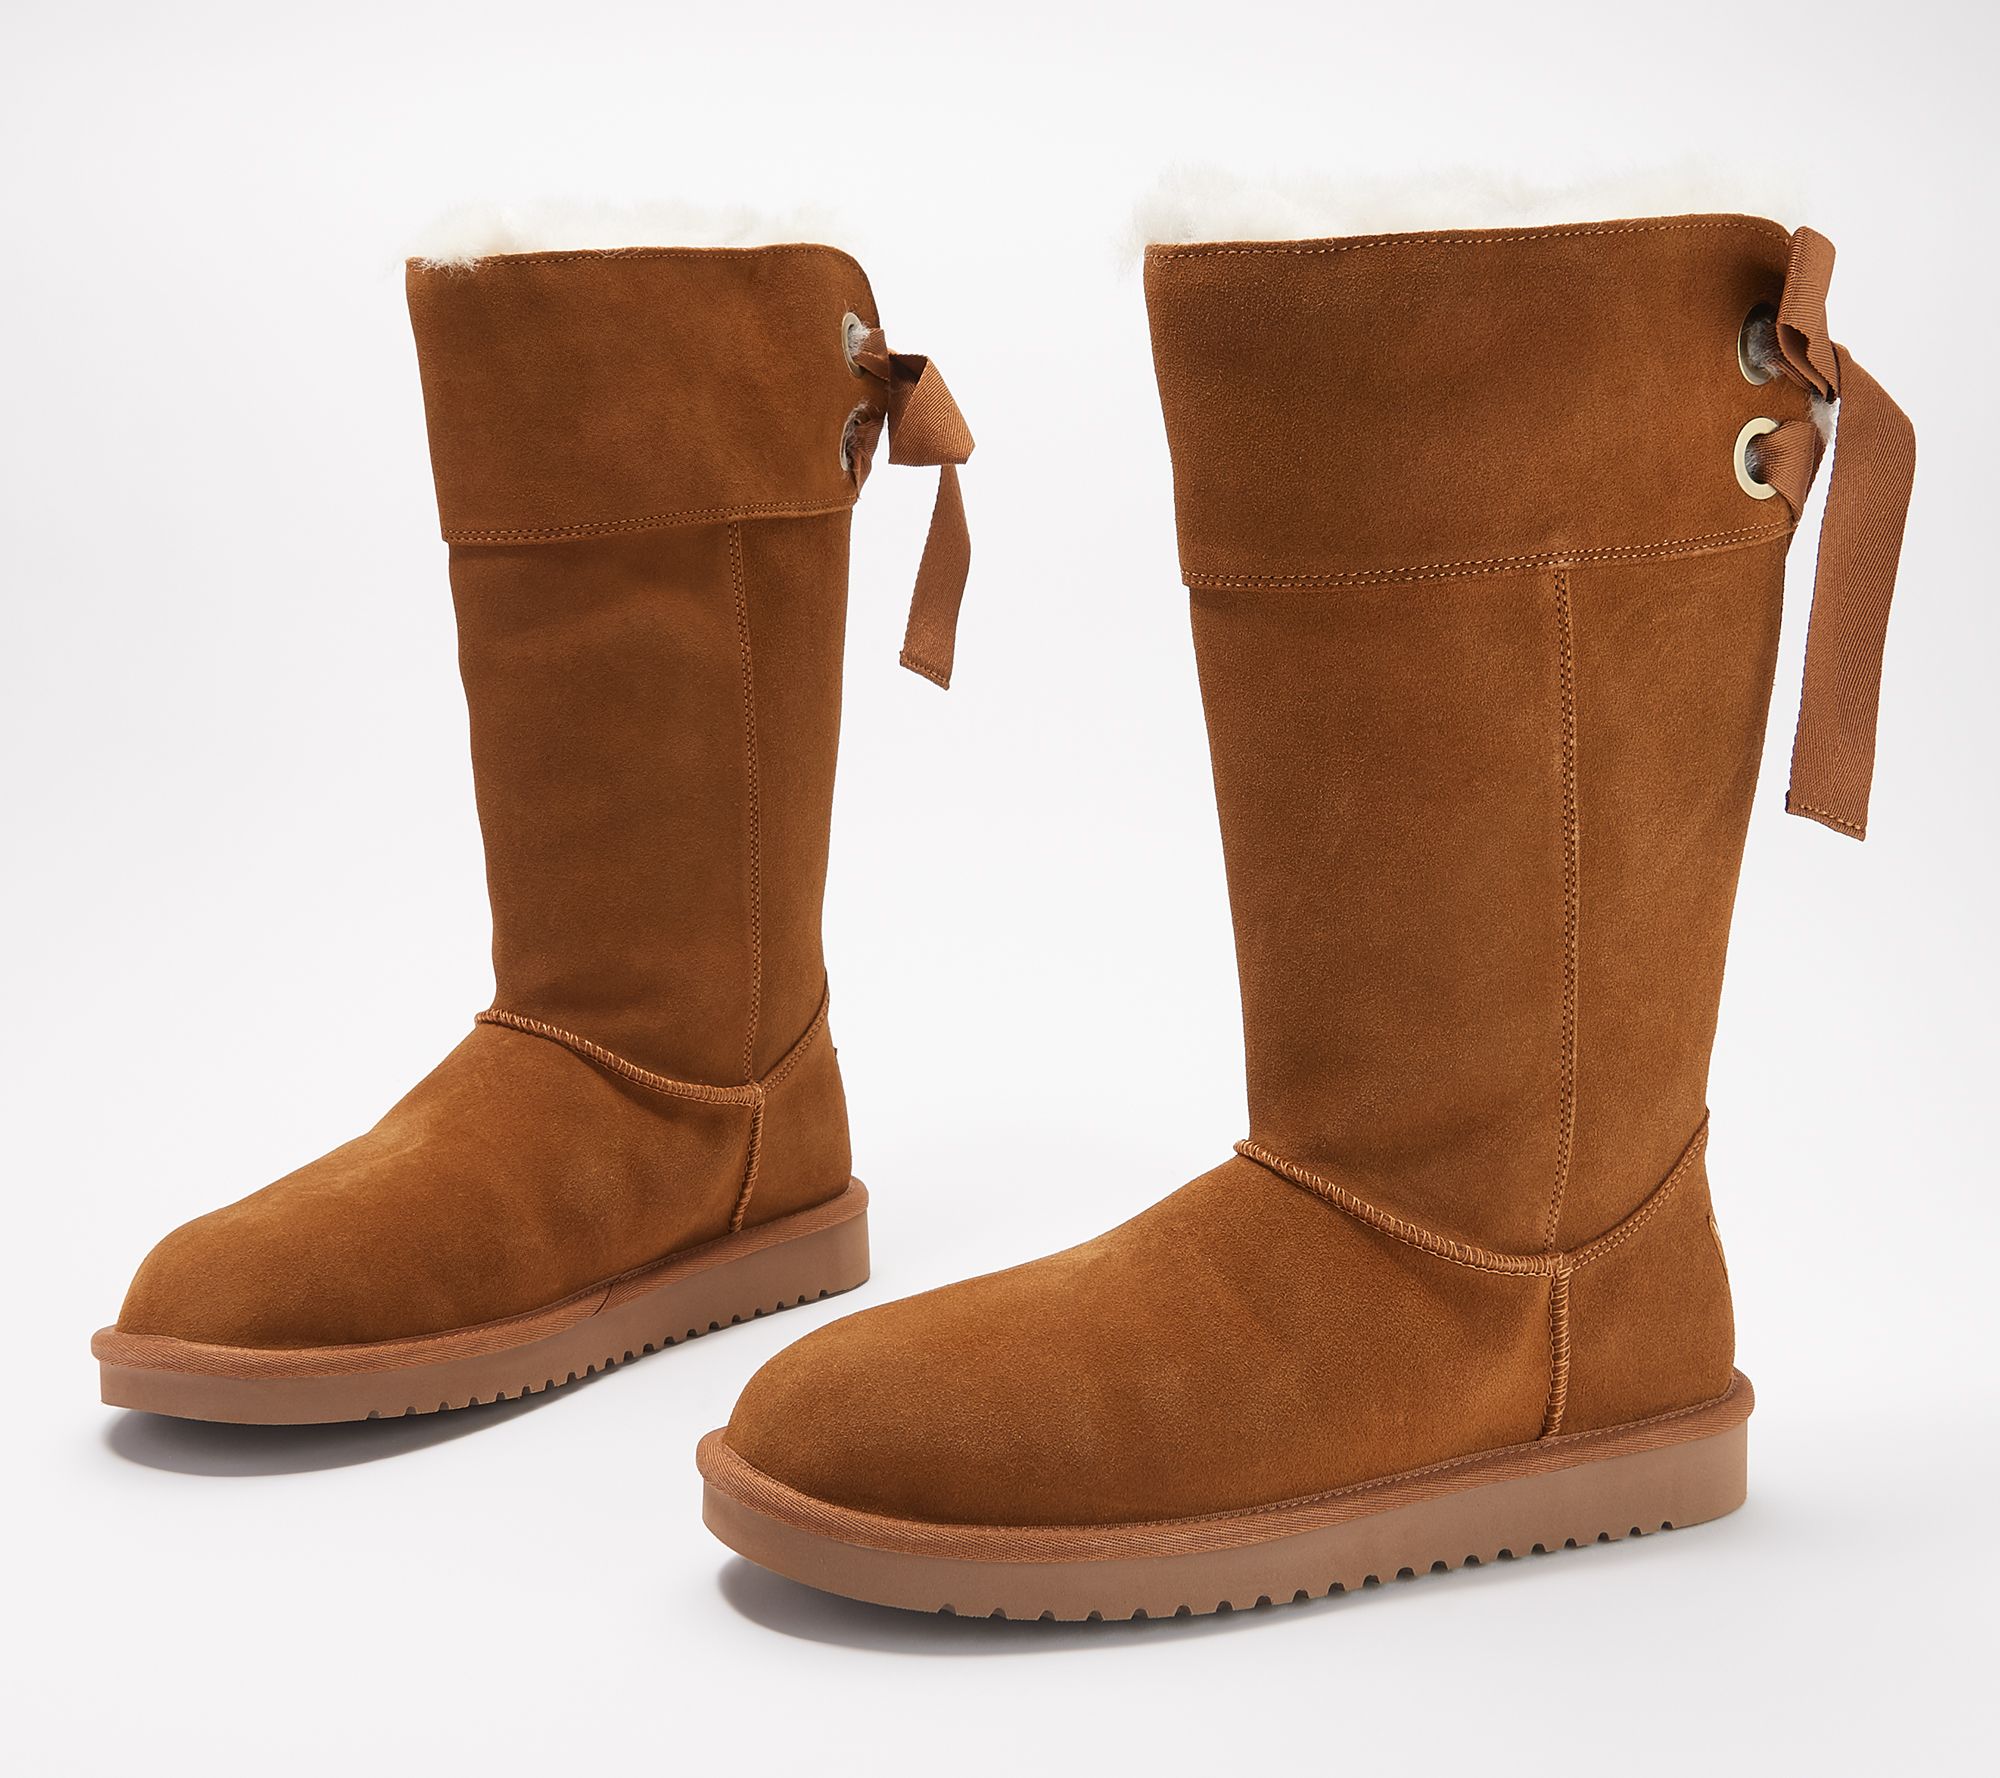 koolaburra boots